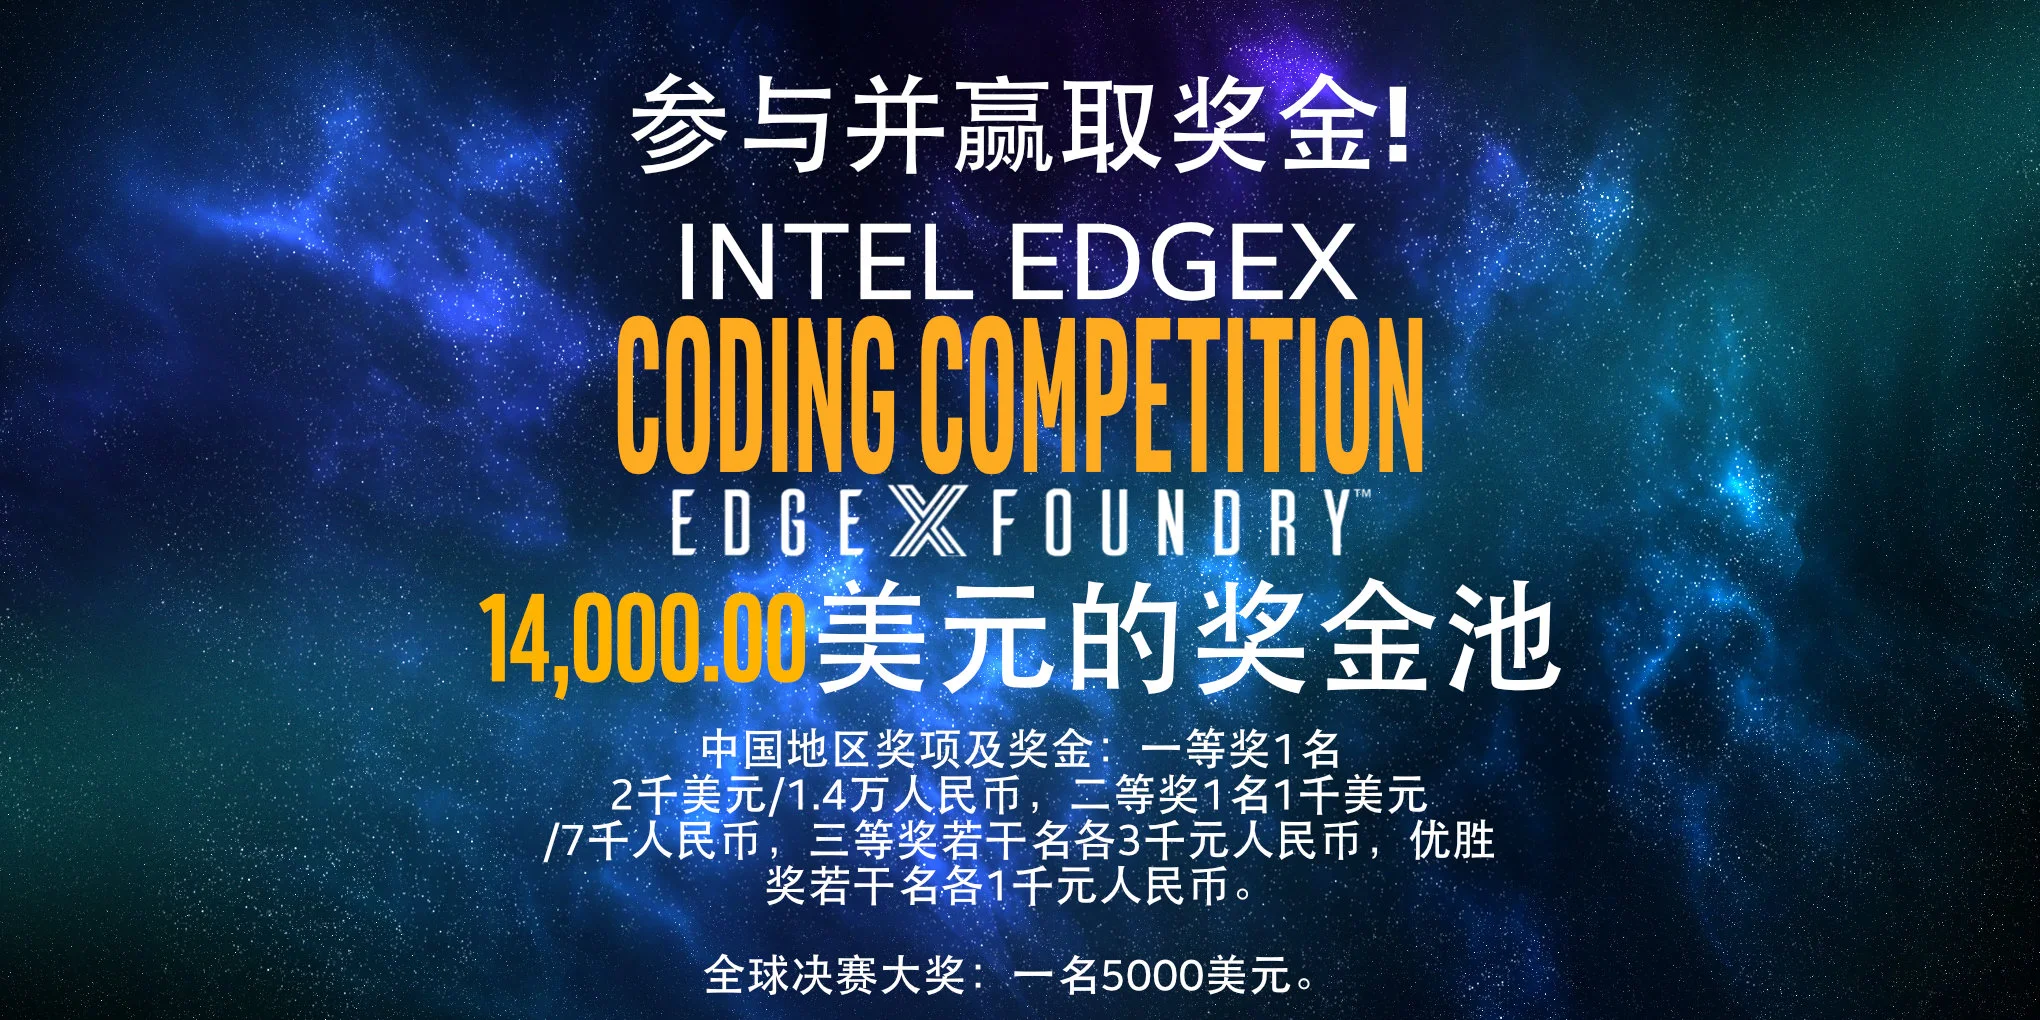 Intel EdgeX Prize pool<br />
